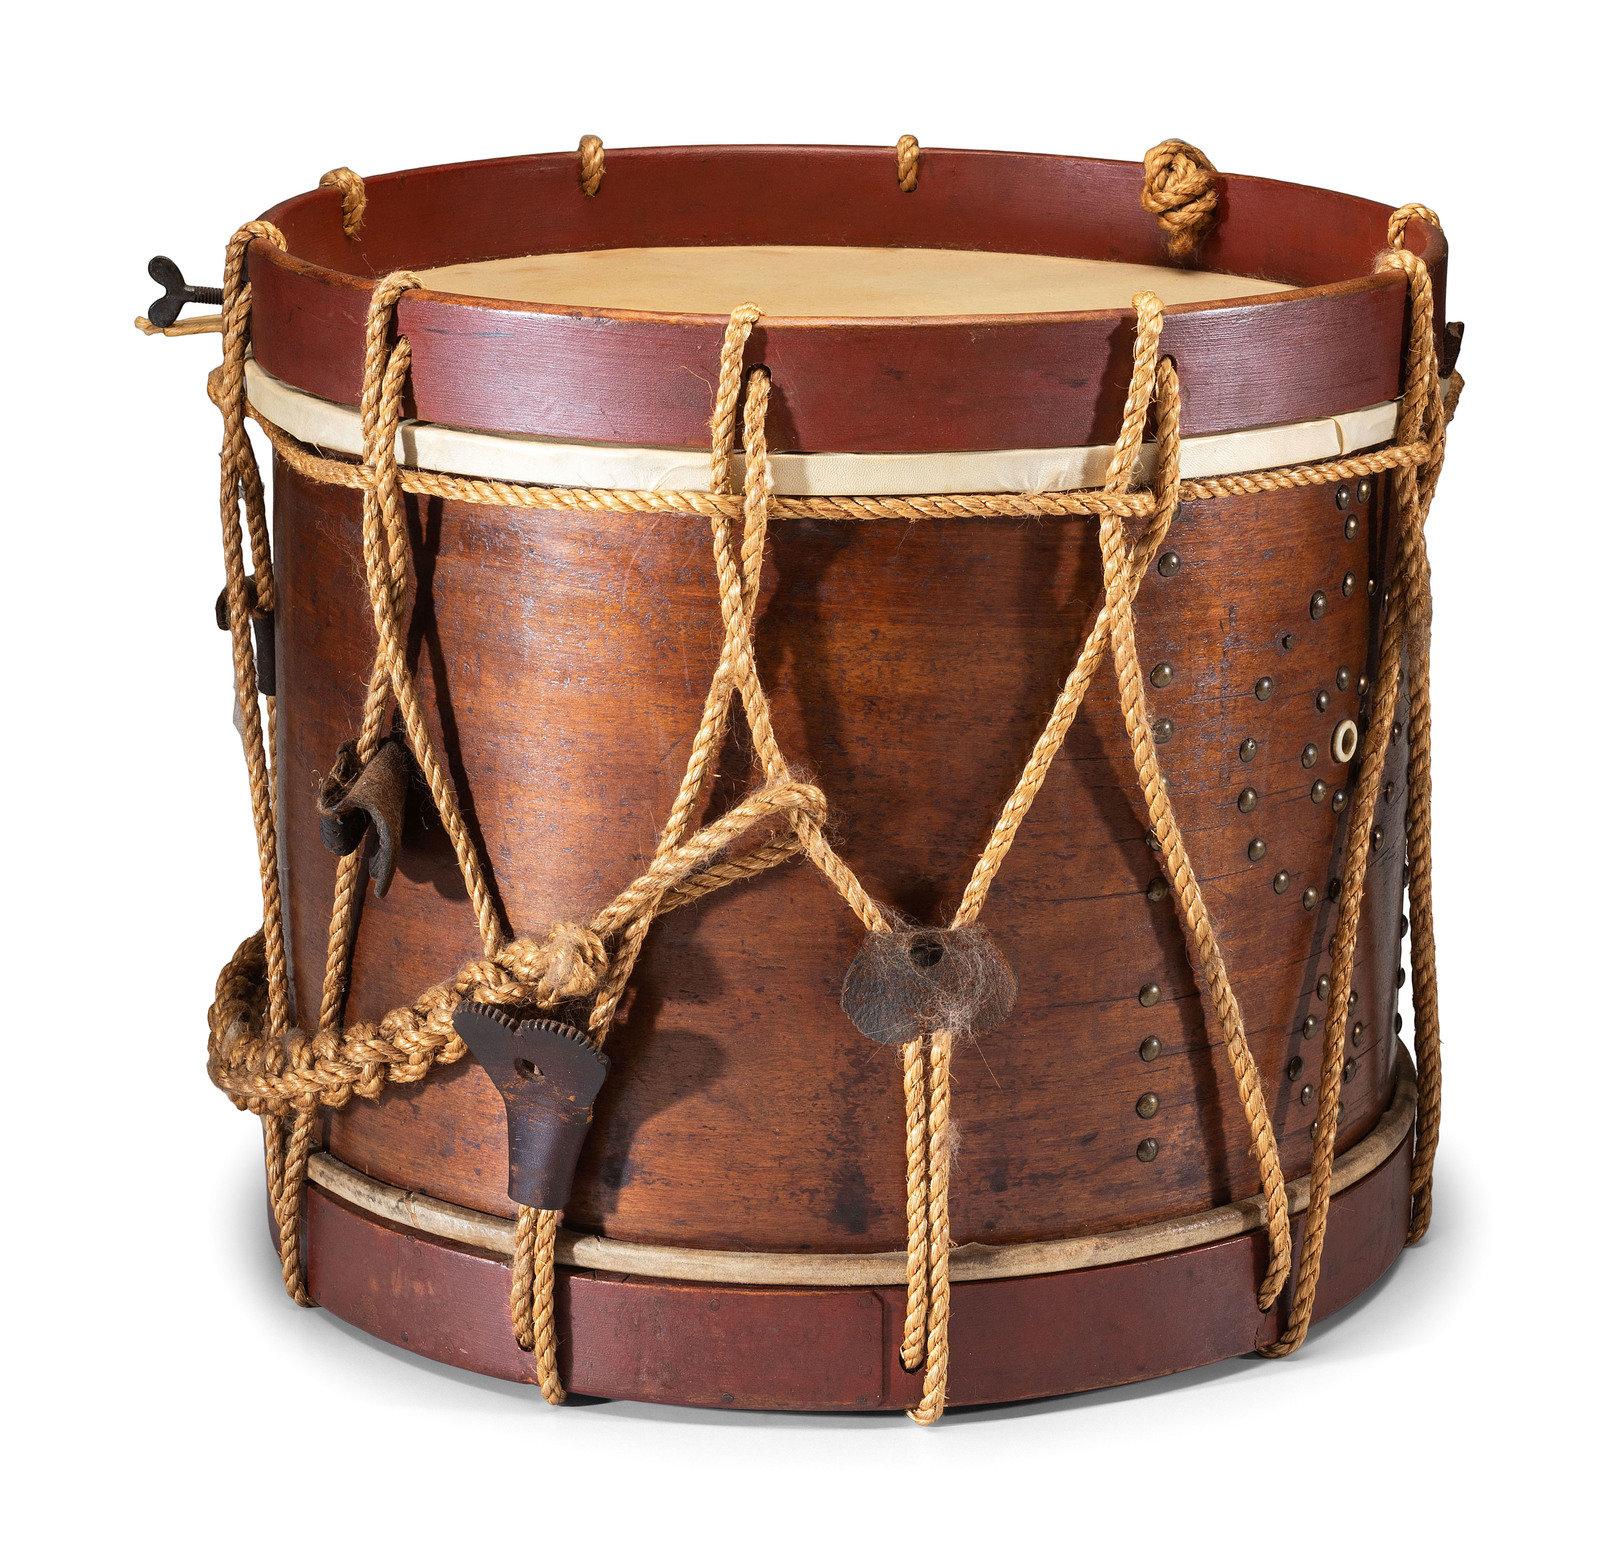 Il s'agit d'un tambour d'accompagnement original datant de l'époque de la guerre civile, accompagné d'une paire de baguettes en bois. Il s'agit d'un tambour à tension de corde avec un corps en bois, des cordes et des languettes en cuir. Le trou du